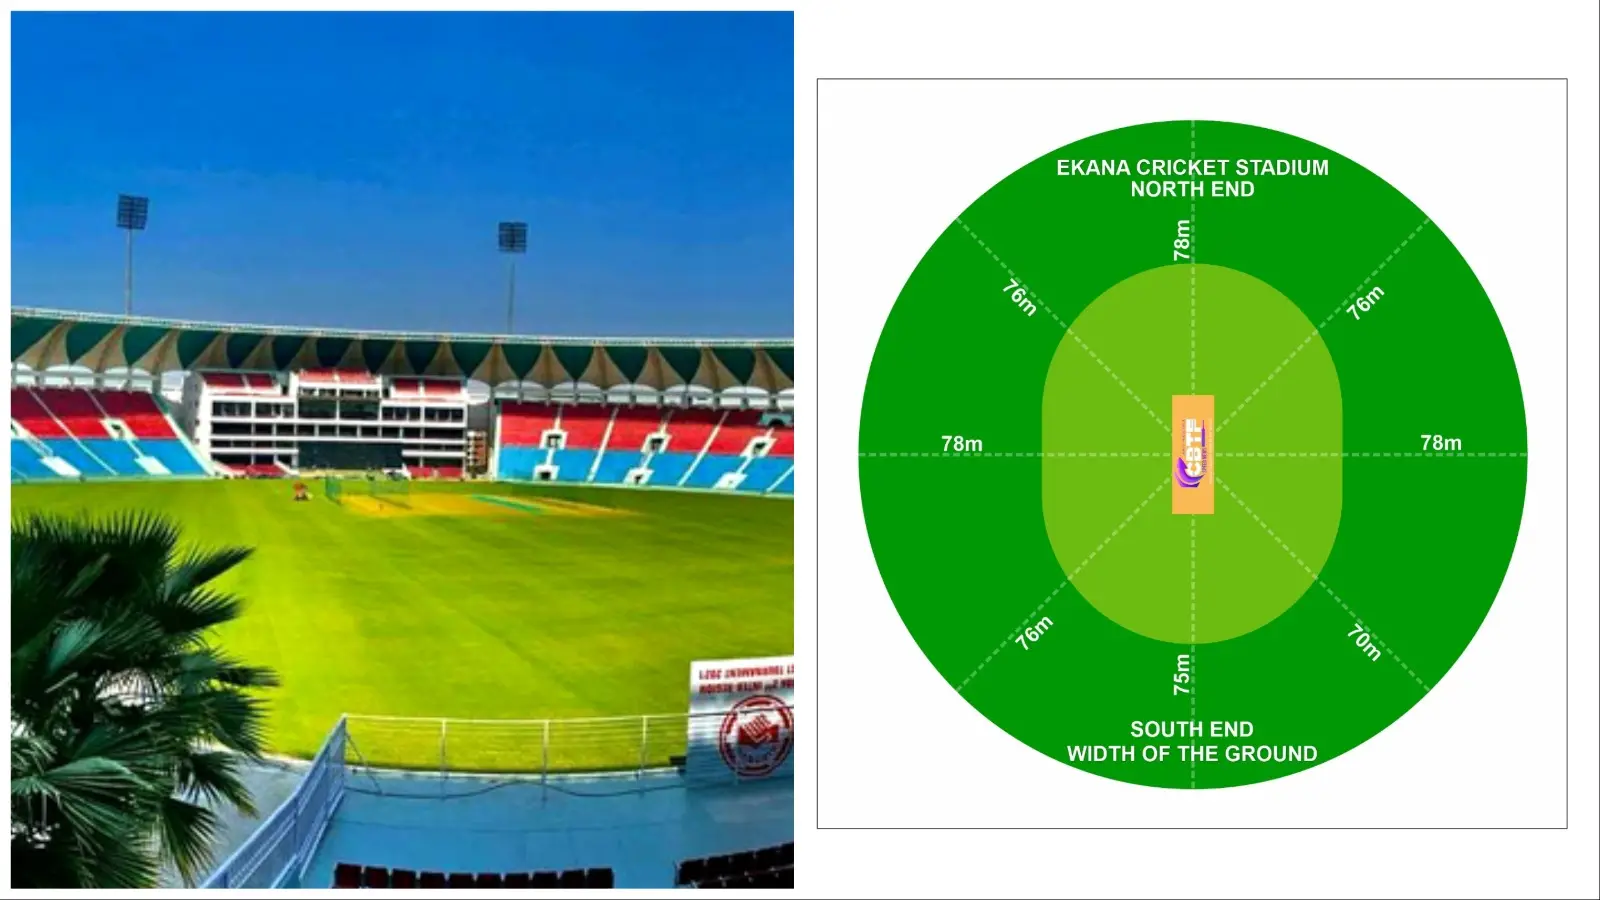 Ekana Cricket Stadium Boundary Length And Seating Capacity